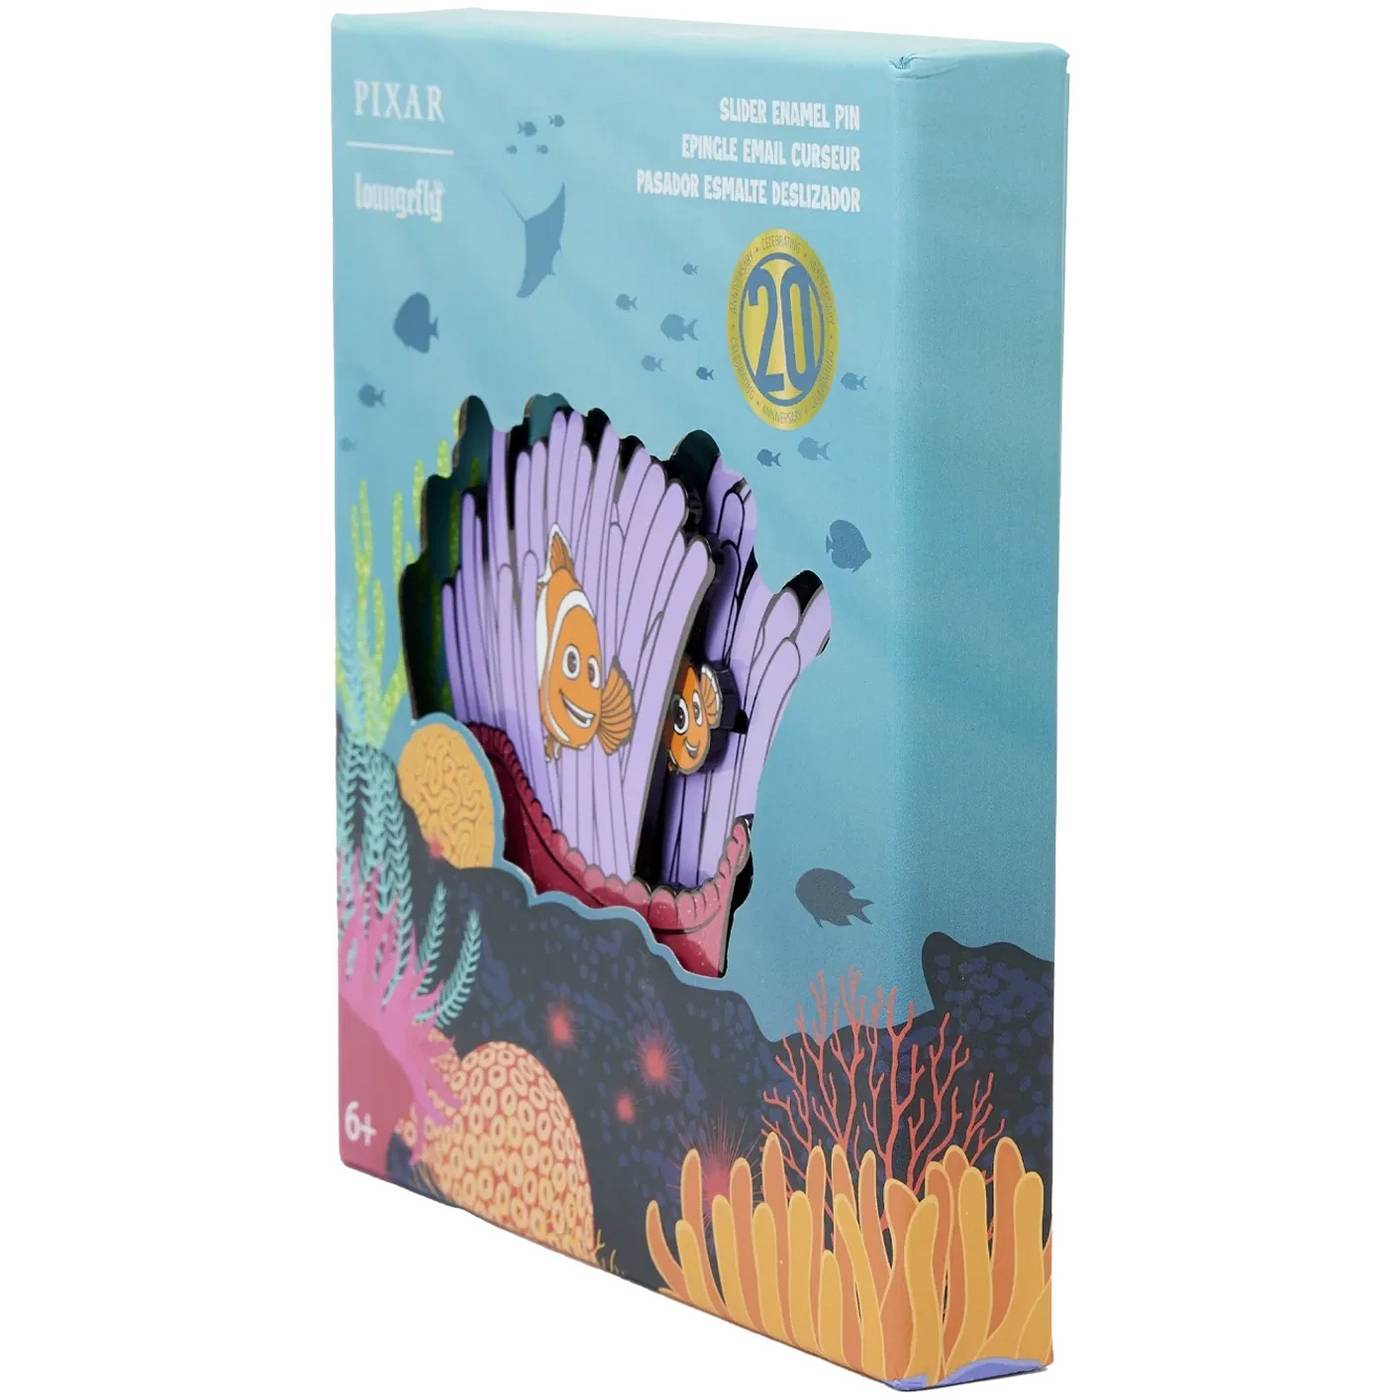 Finding Nemo 20th Anniversary Collector Box